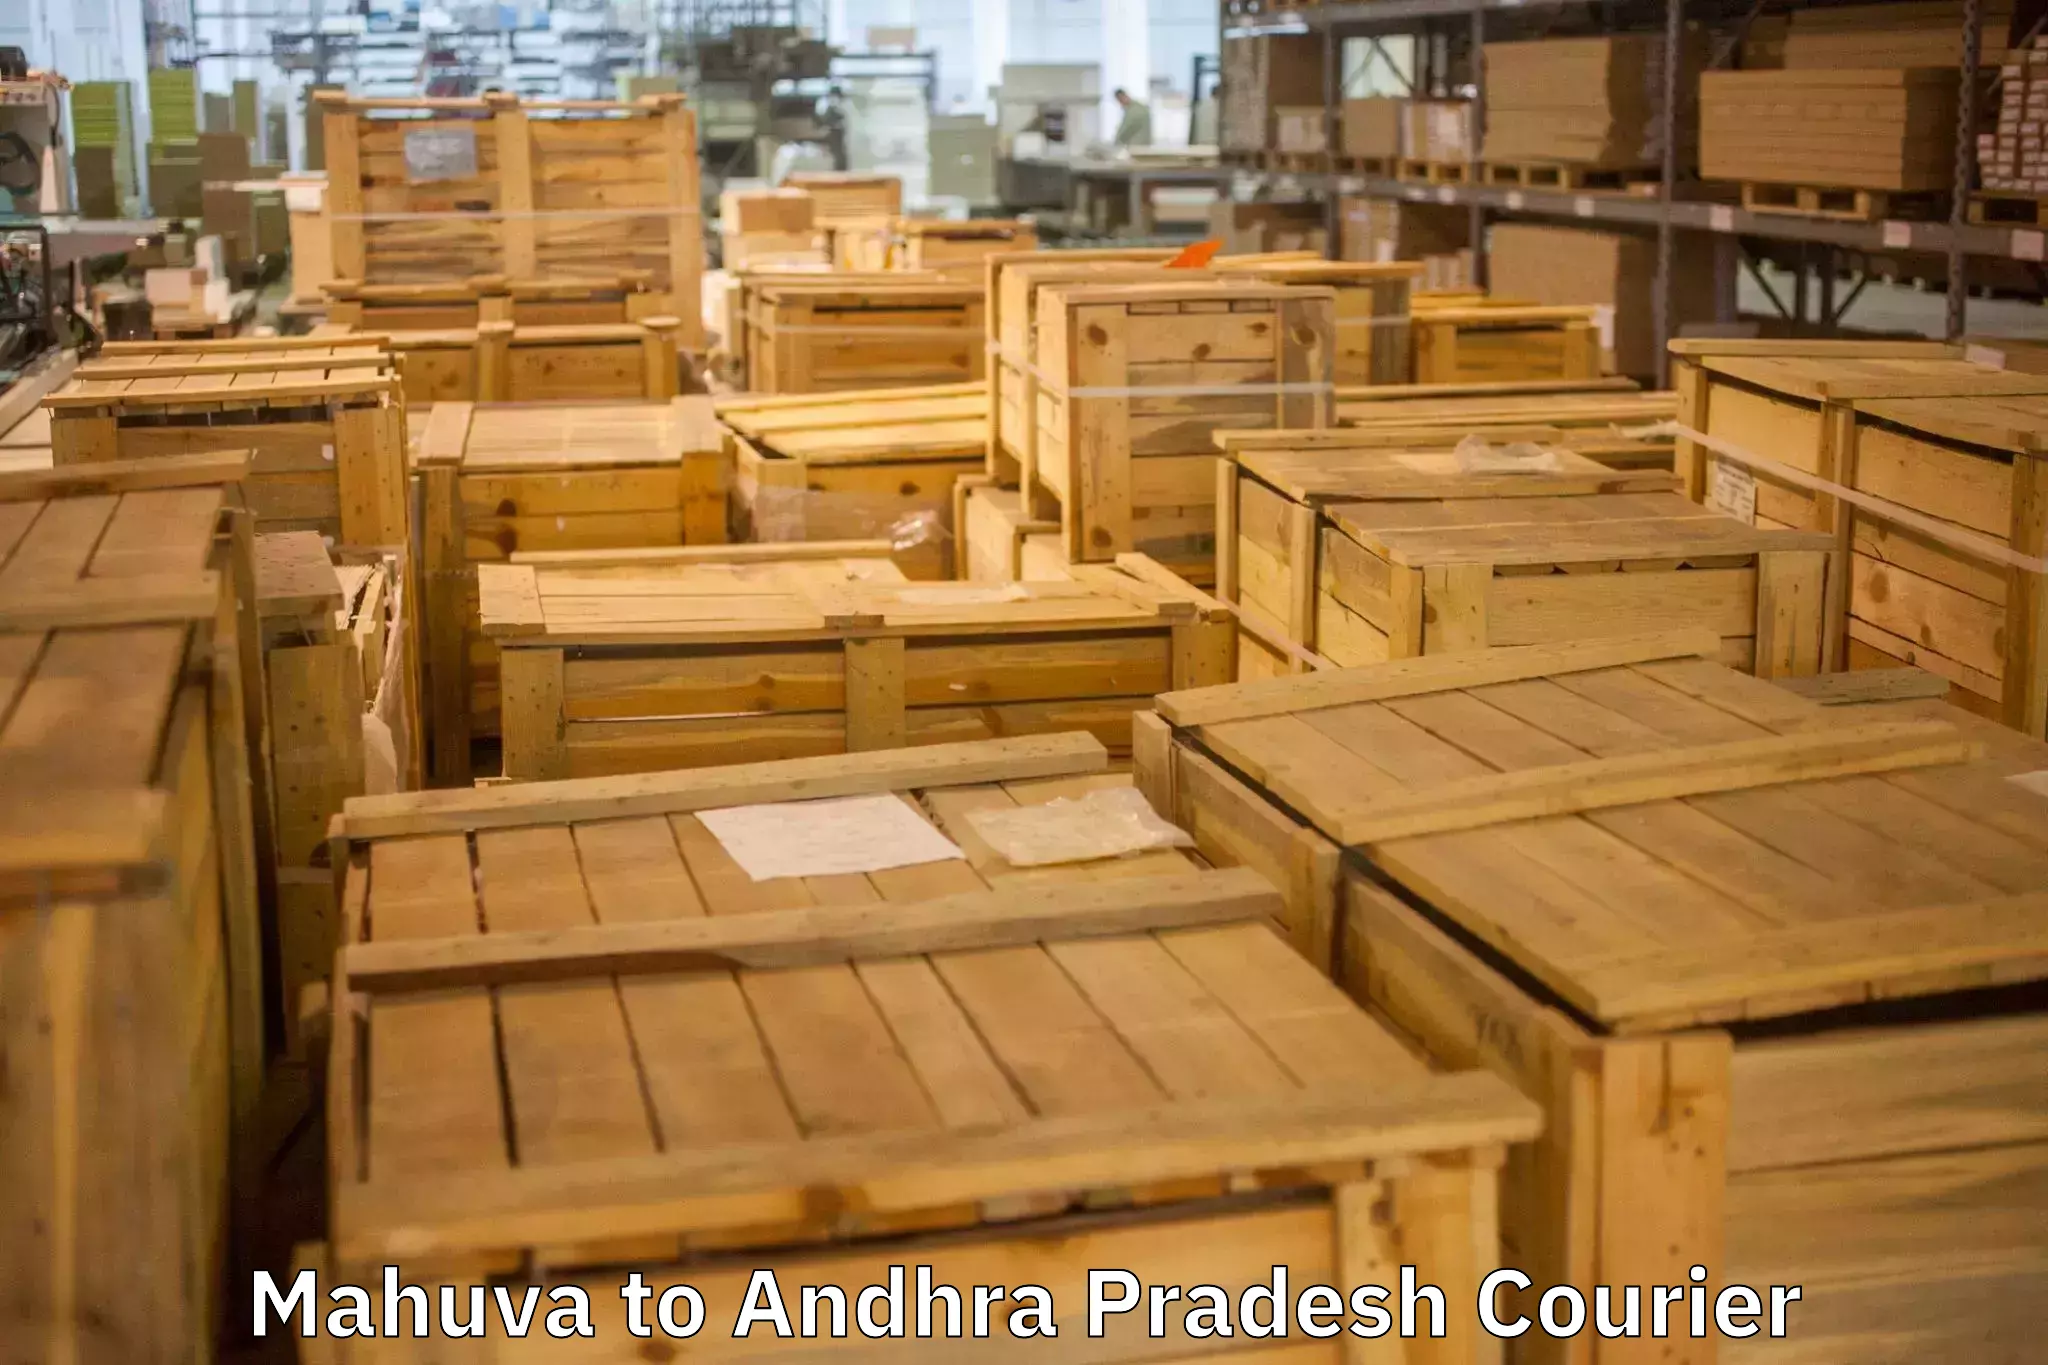 Expert goods movers in Mahuva to Gudur